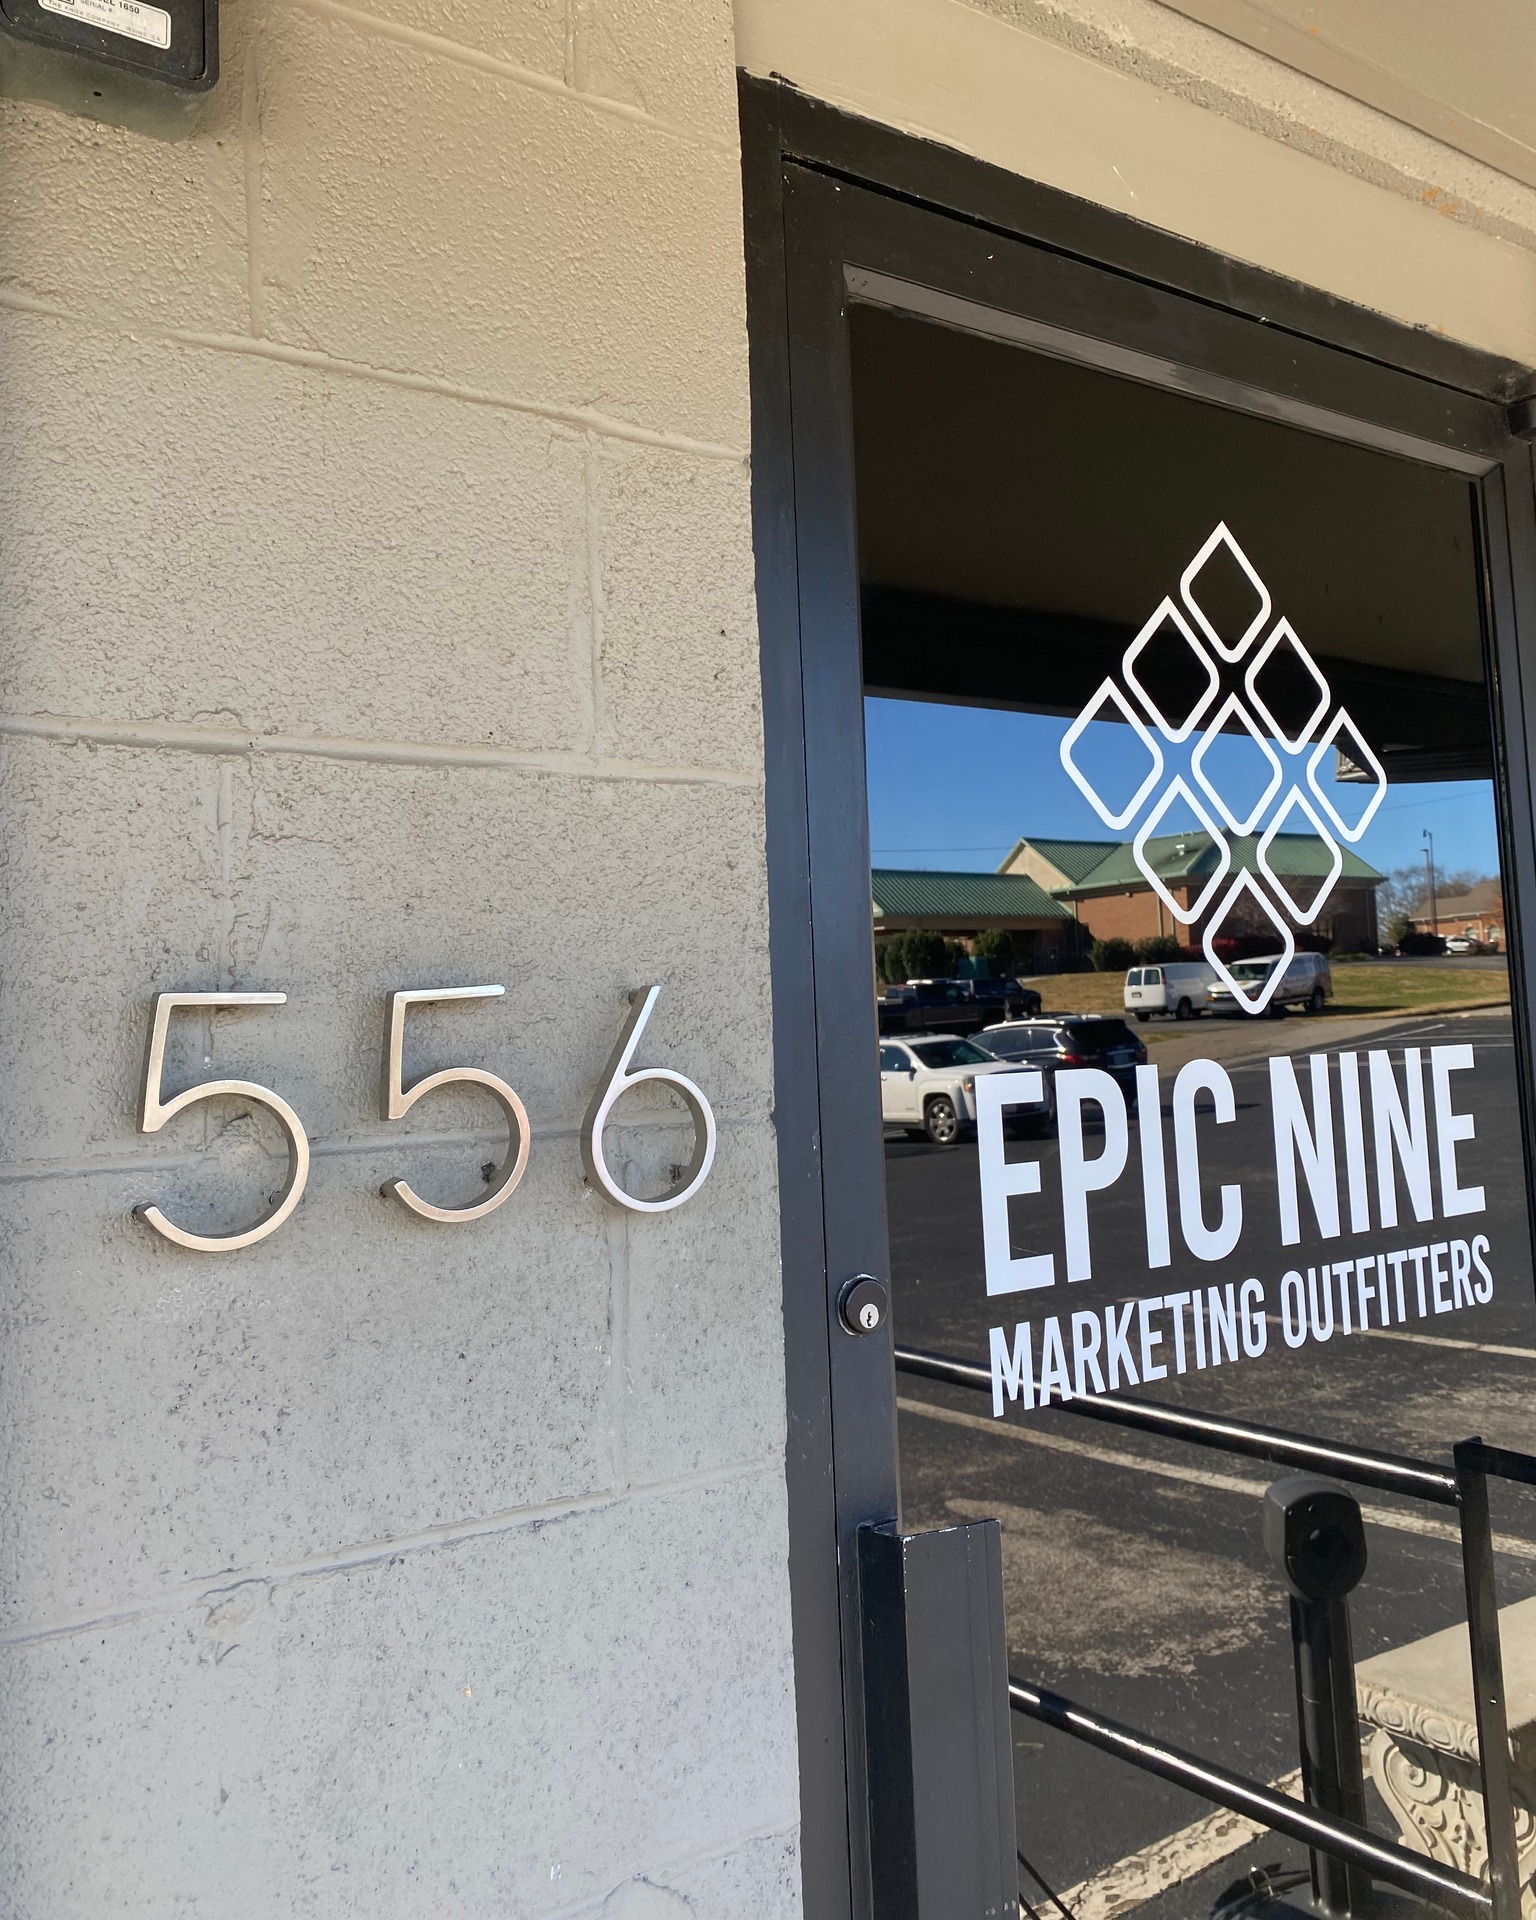 Epic Nine Marketing